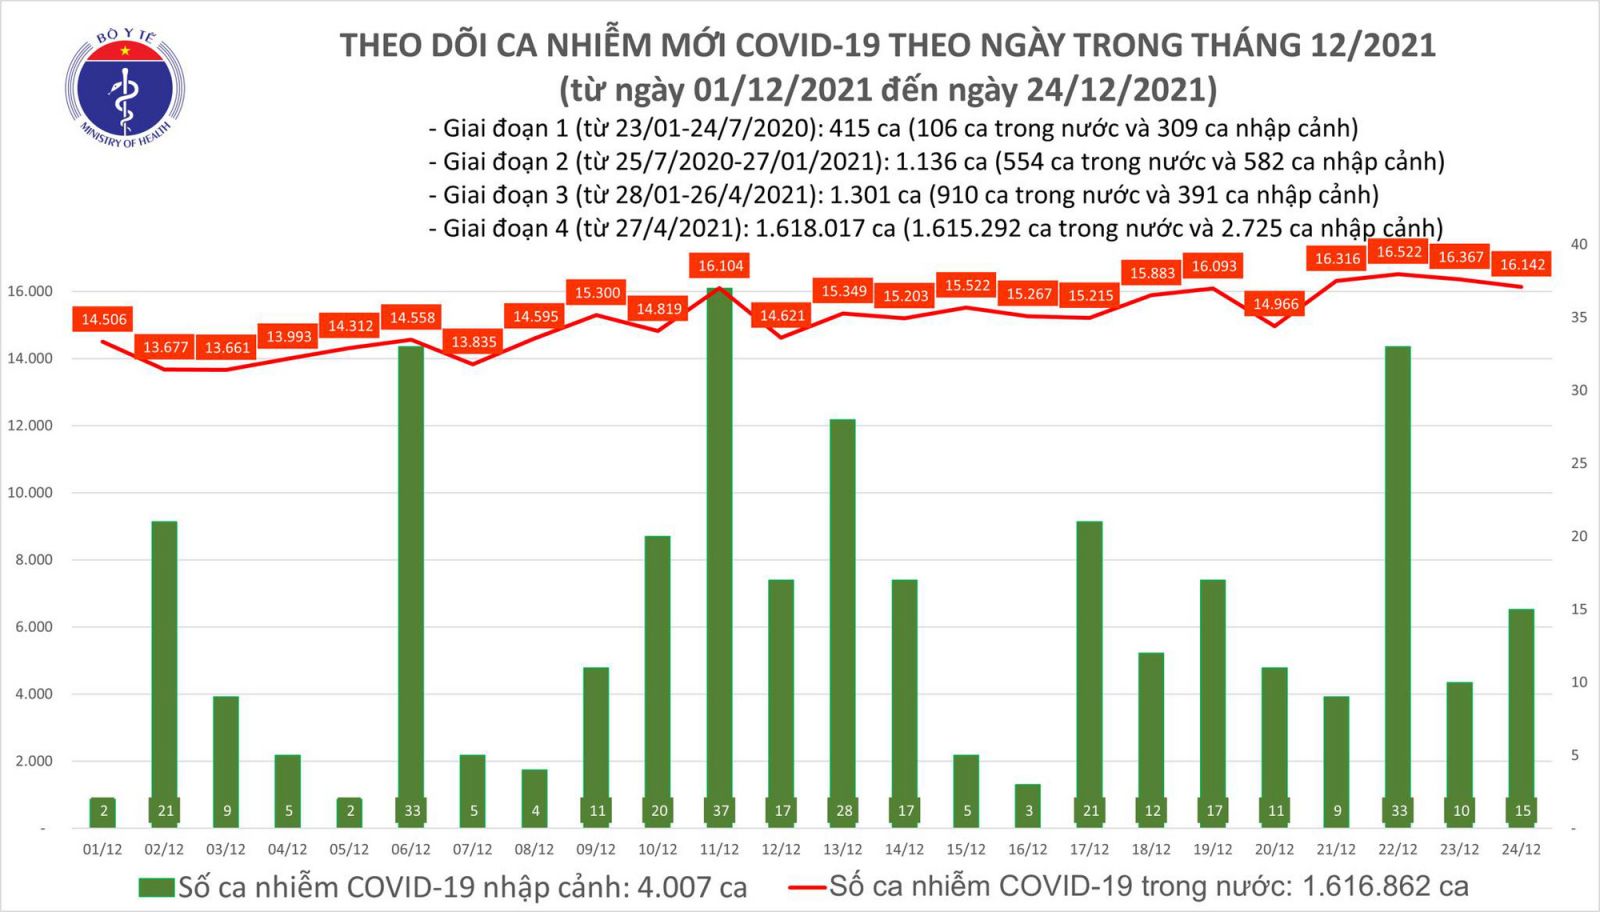 Ngày 24/12: Có 16.157 ca mắc COVID-19 tại 62 tỉnh, thành; Hà Nội vẫn nhiều nhất với 1.834 ca